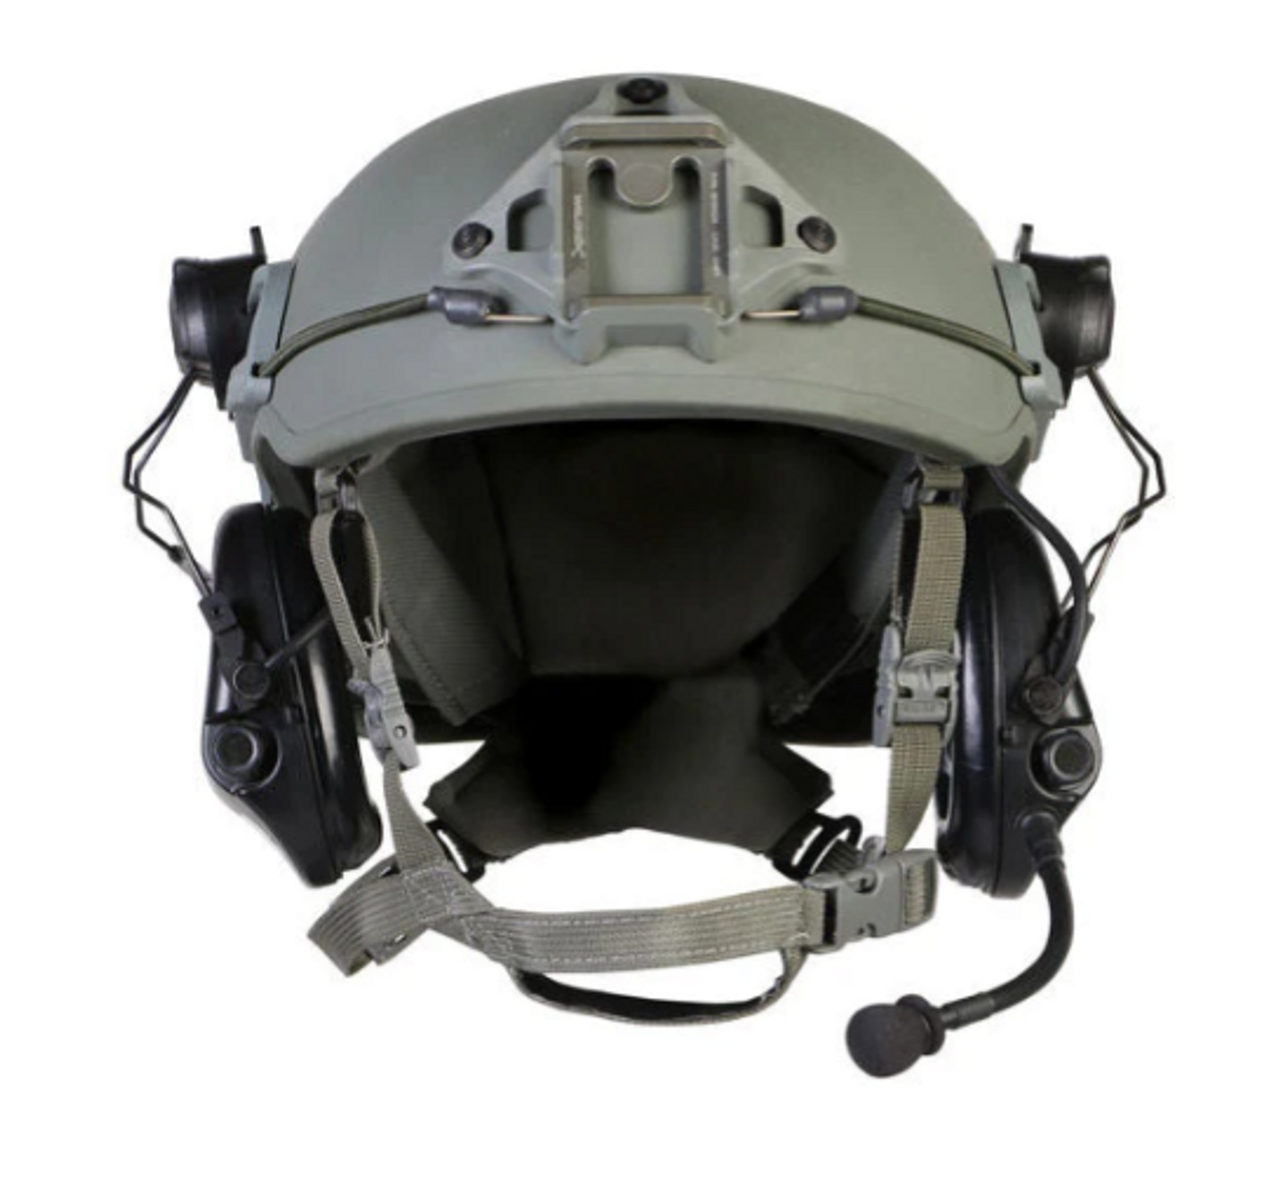 Safariland Protec Delta X Iiia Ballistic Helmet